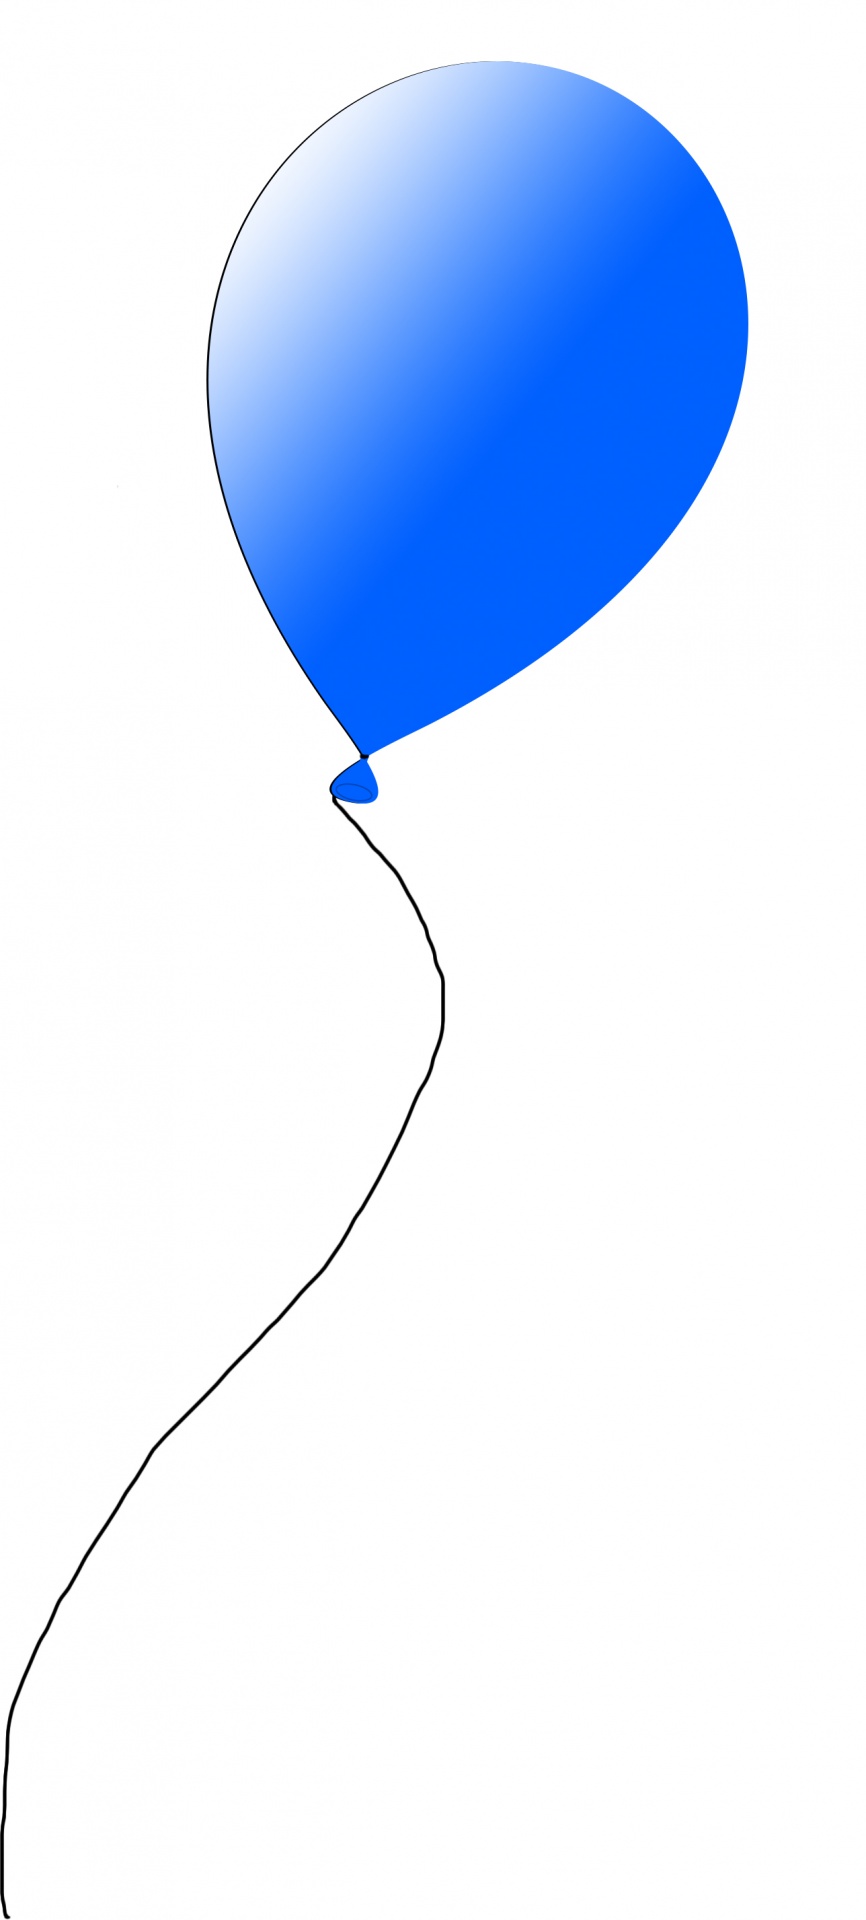 Blå ballong